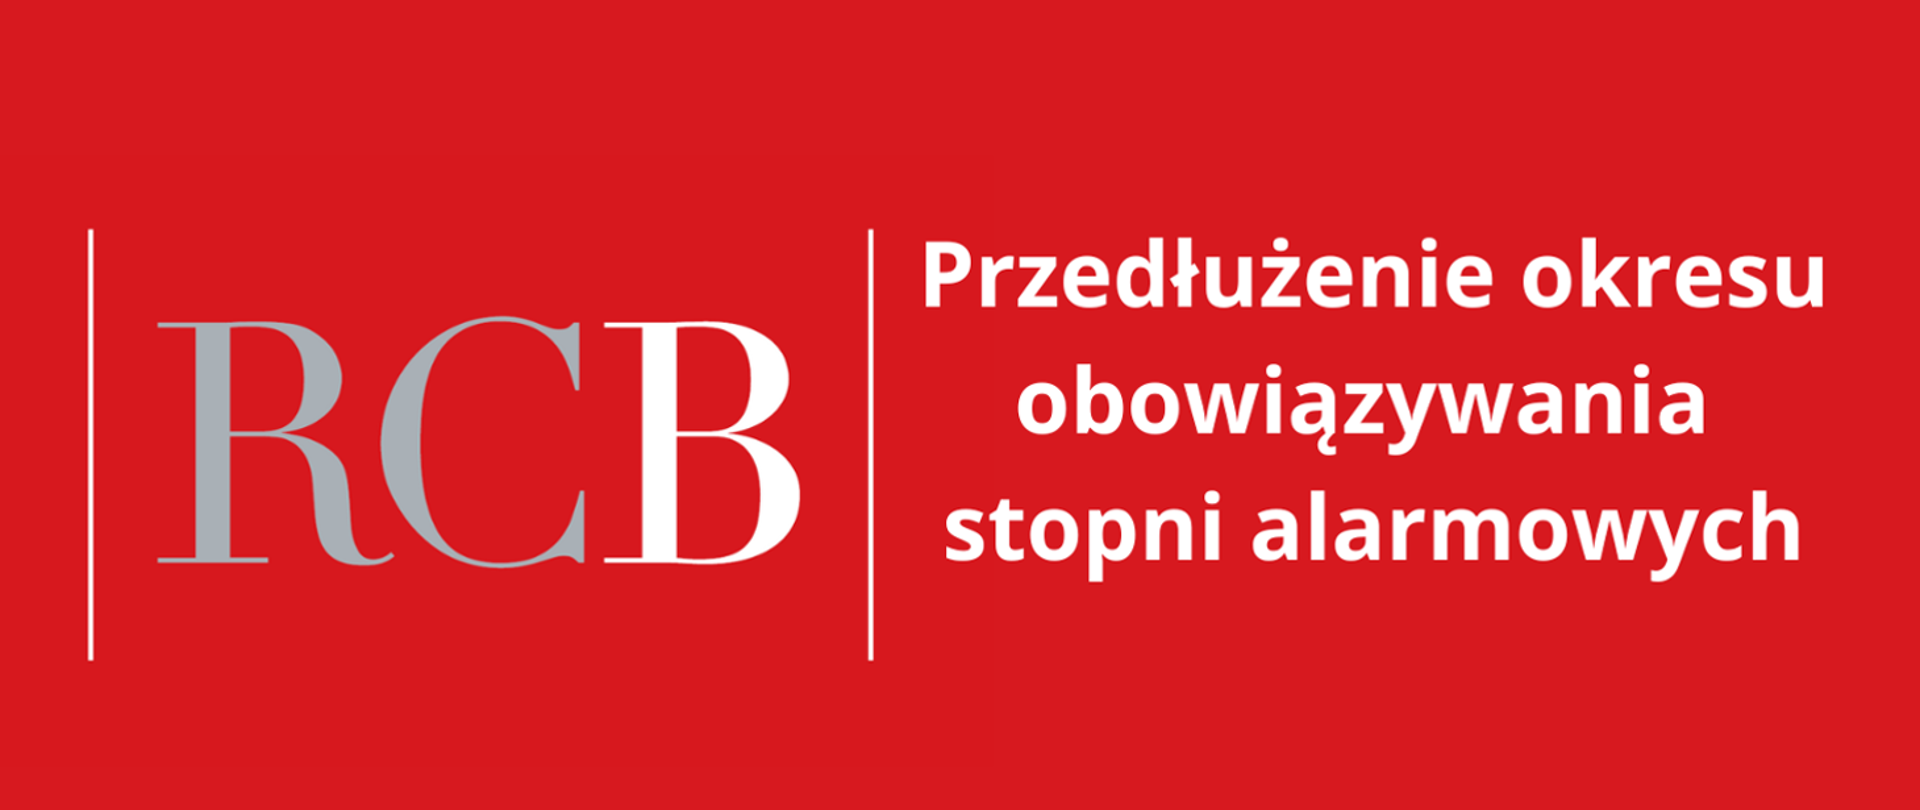 baner koloru czerwonego, z lewej strony logo RCB, z prawej strony informacja o przedłużeniu obowiązywania stopni alarmowych